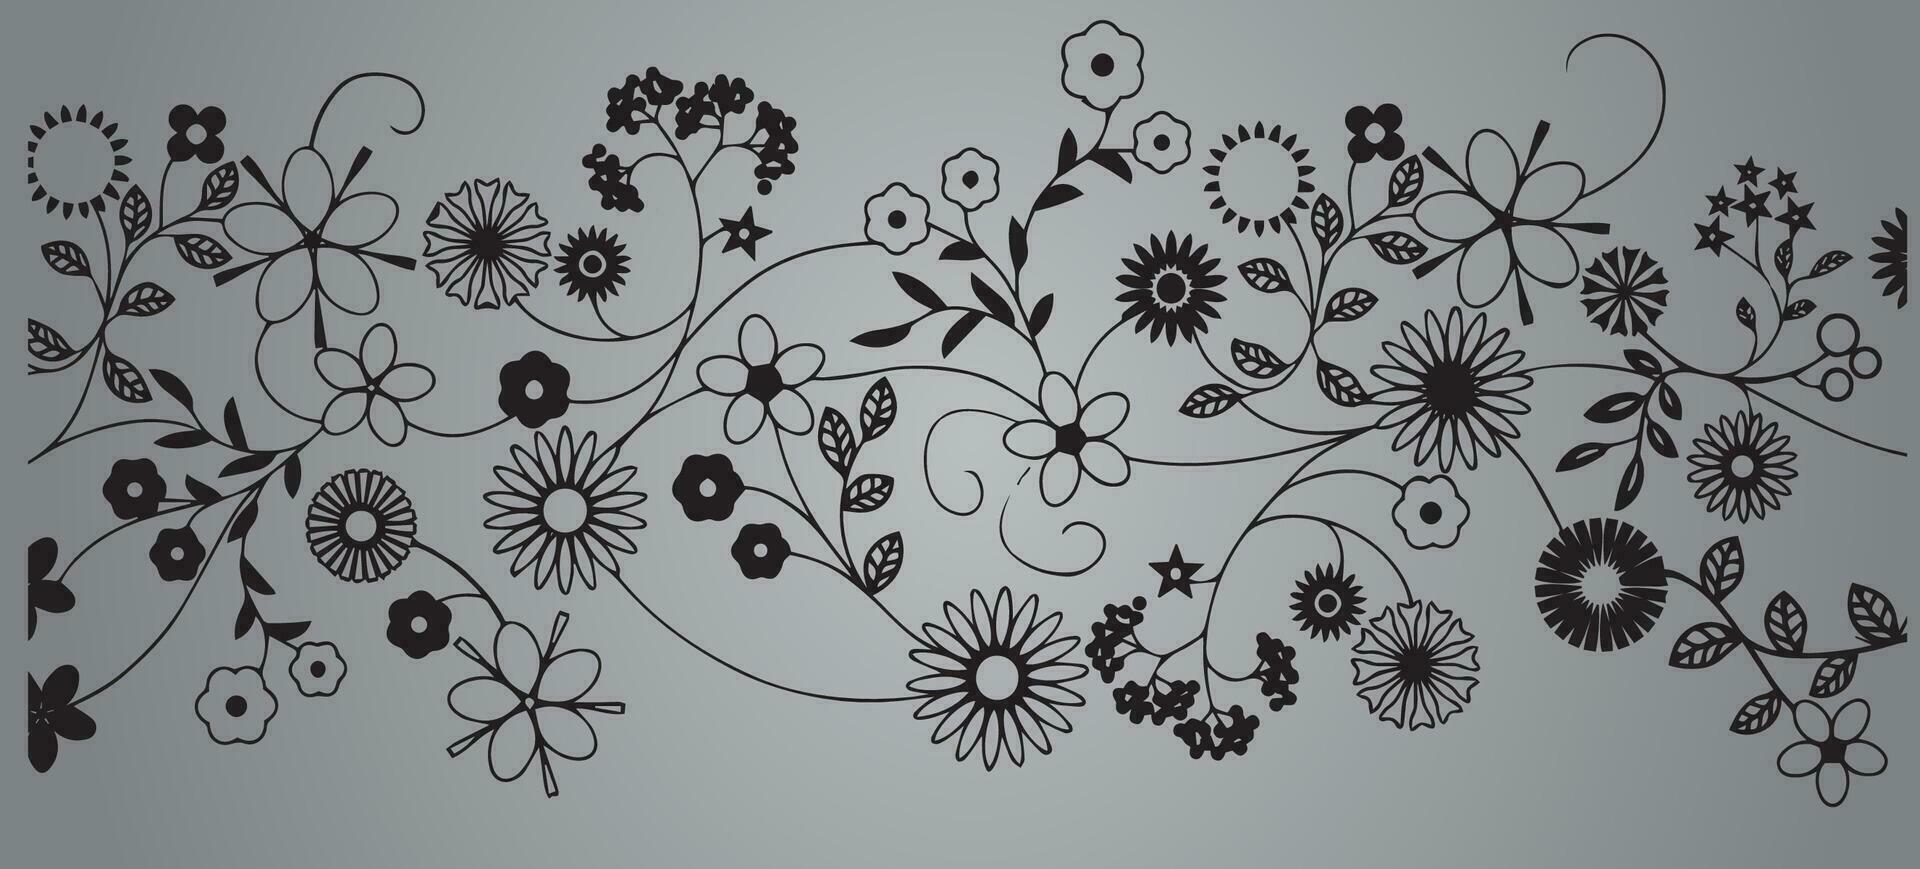 astratto fiore e viti vettore illustrazione vinile tagliare